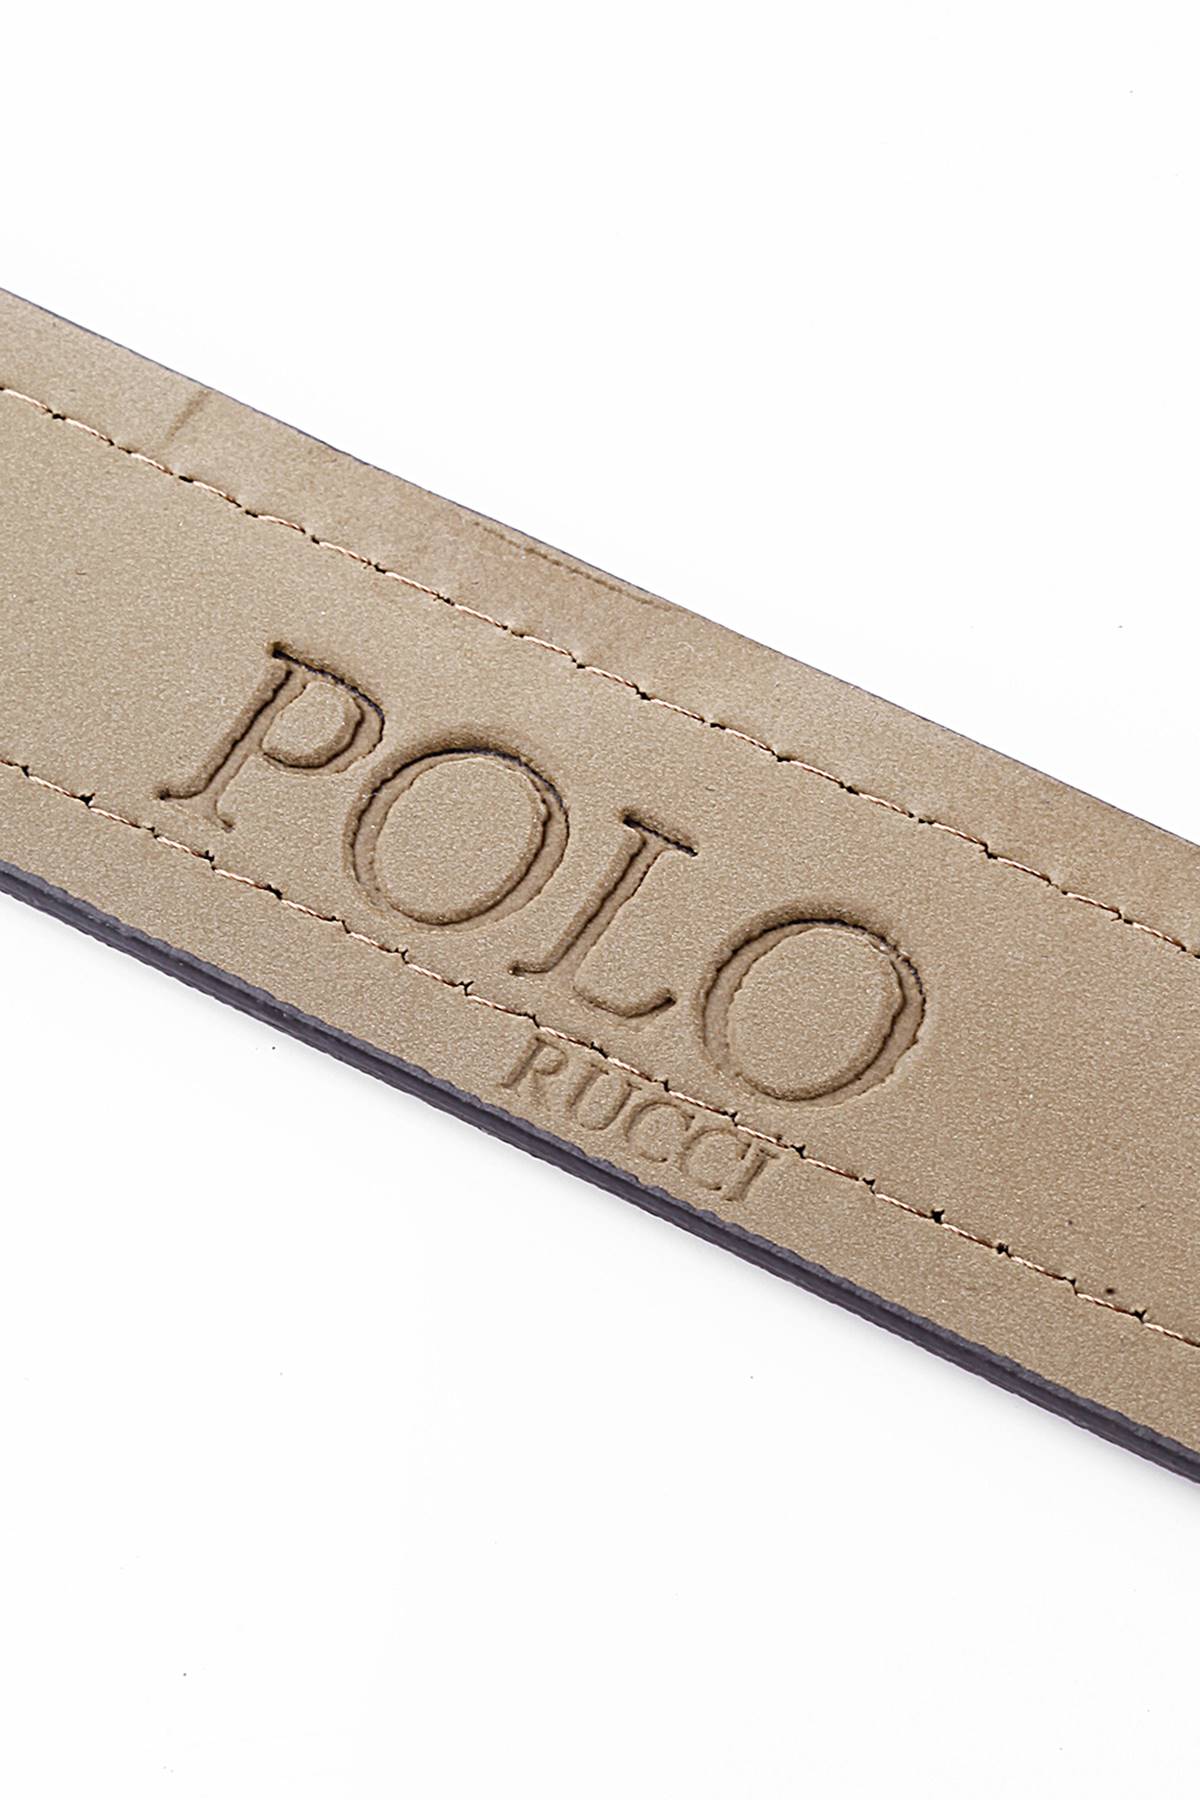 Polo Rucci Erkek Kapıda Ödeme Hediye Paketli Kişiye Özel     KMR-2011-L125